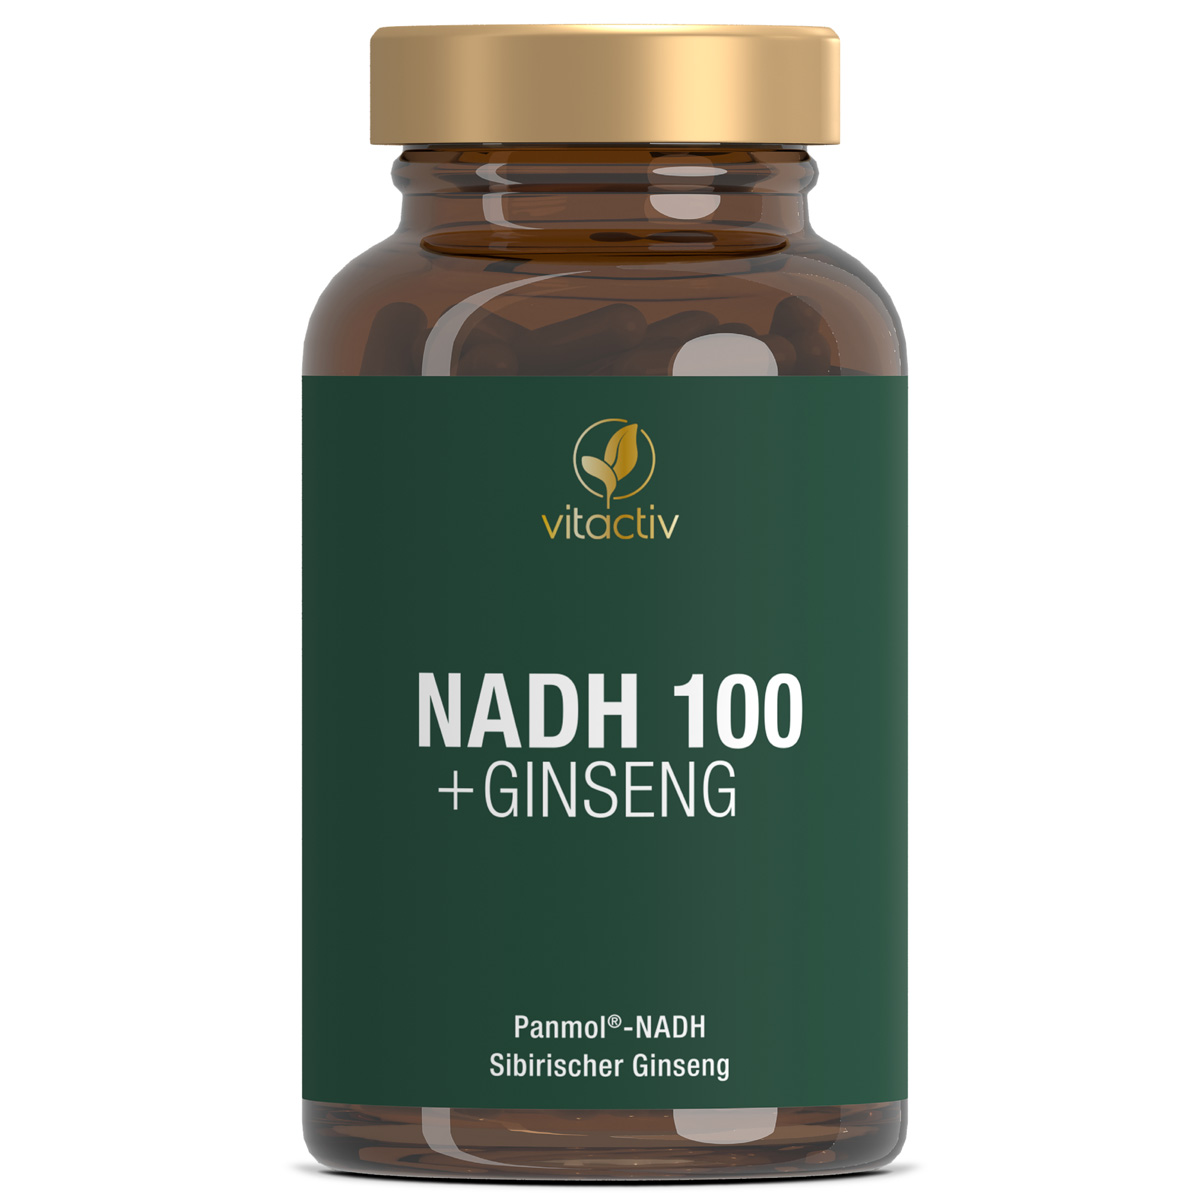 NADH 100 + Ginseng